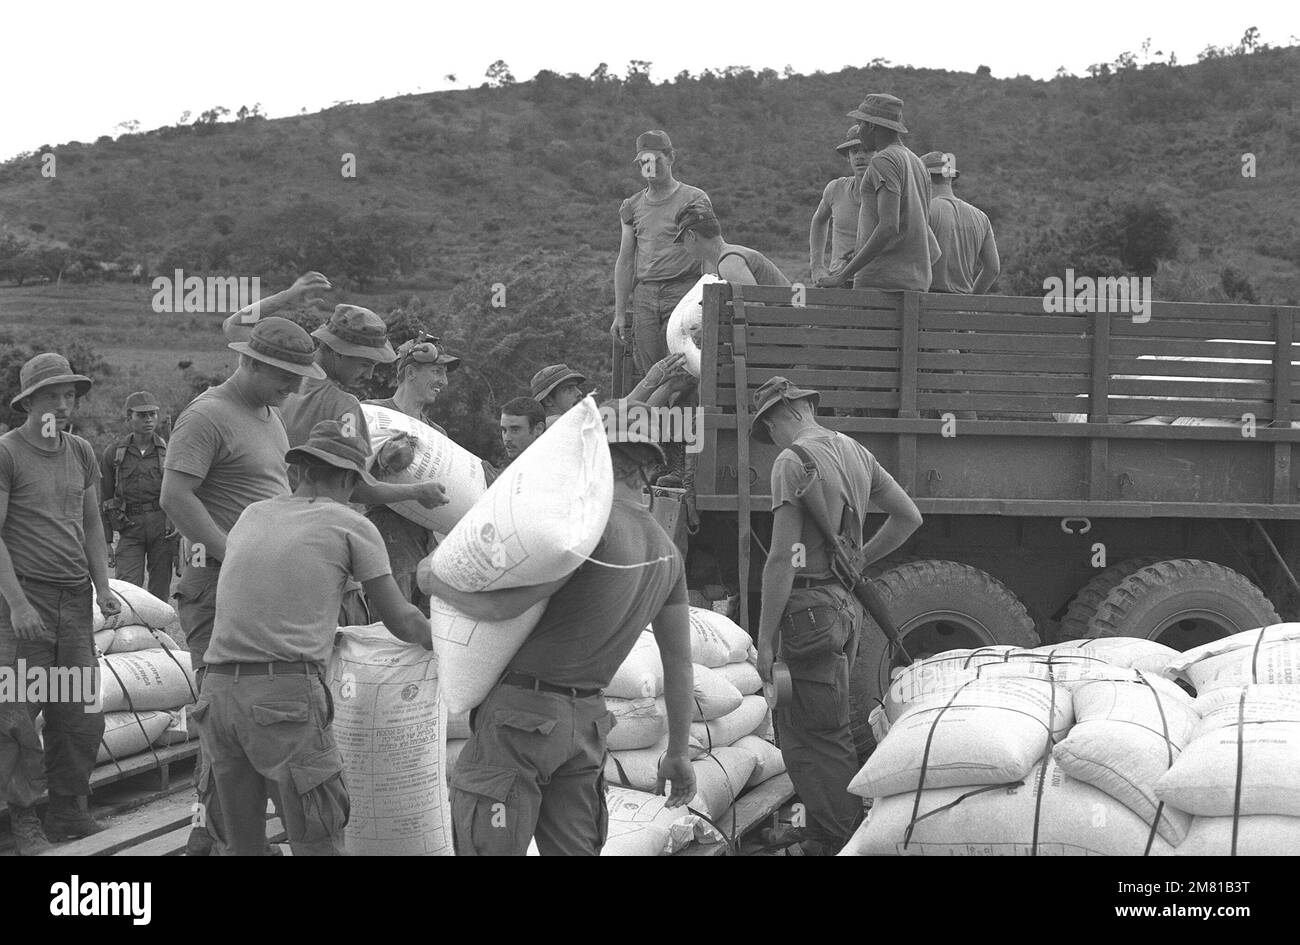 Soldaten laden während der AHUAS TARA II (BIG PINE)-Operation eine Ladung Mais für das Welternährungsprogramm mit einem C-130 Hercules-Flugzeug auf Lastwagen. Die US-Agentur für internationale Entwicklung sponsert das Programm. Betreff Betrieb/Serie: AHUAS TARA II (GROSSE KIEFER) Basis: Aguacate Country: Honduras (HND) Stockfoto